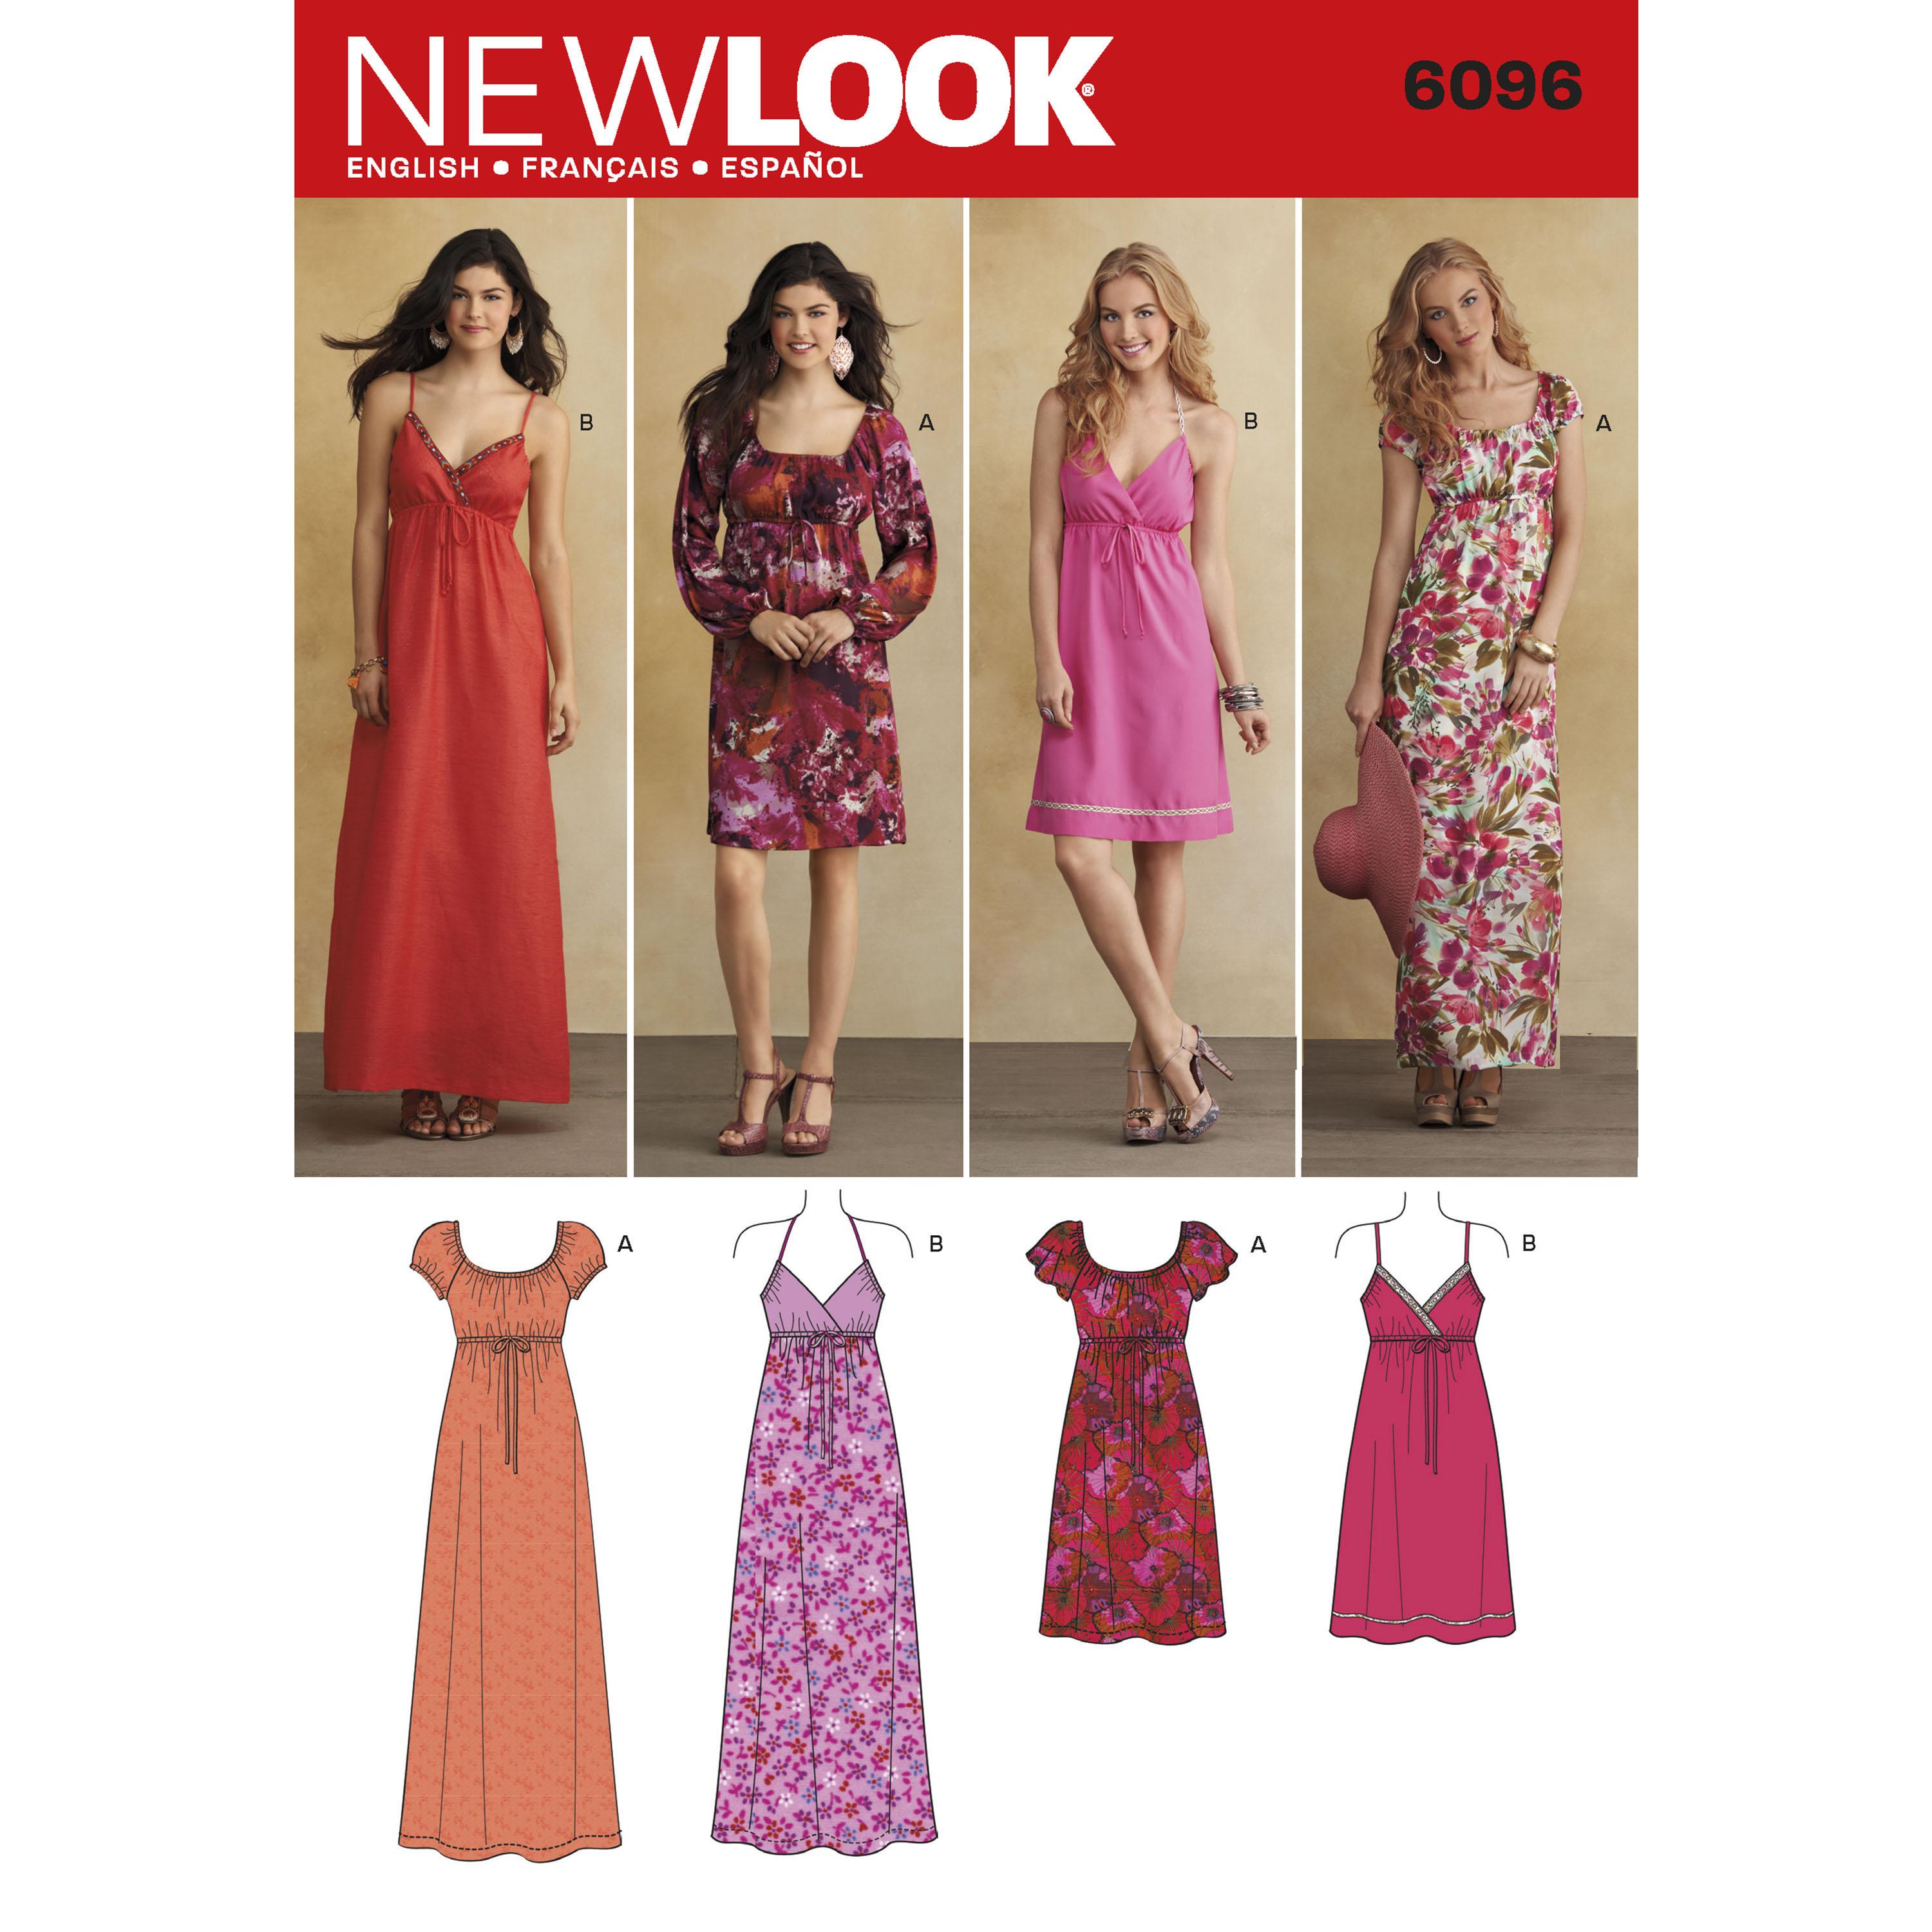 NewLook N6096 Misses' Dresses